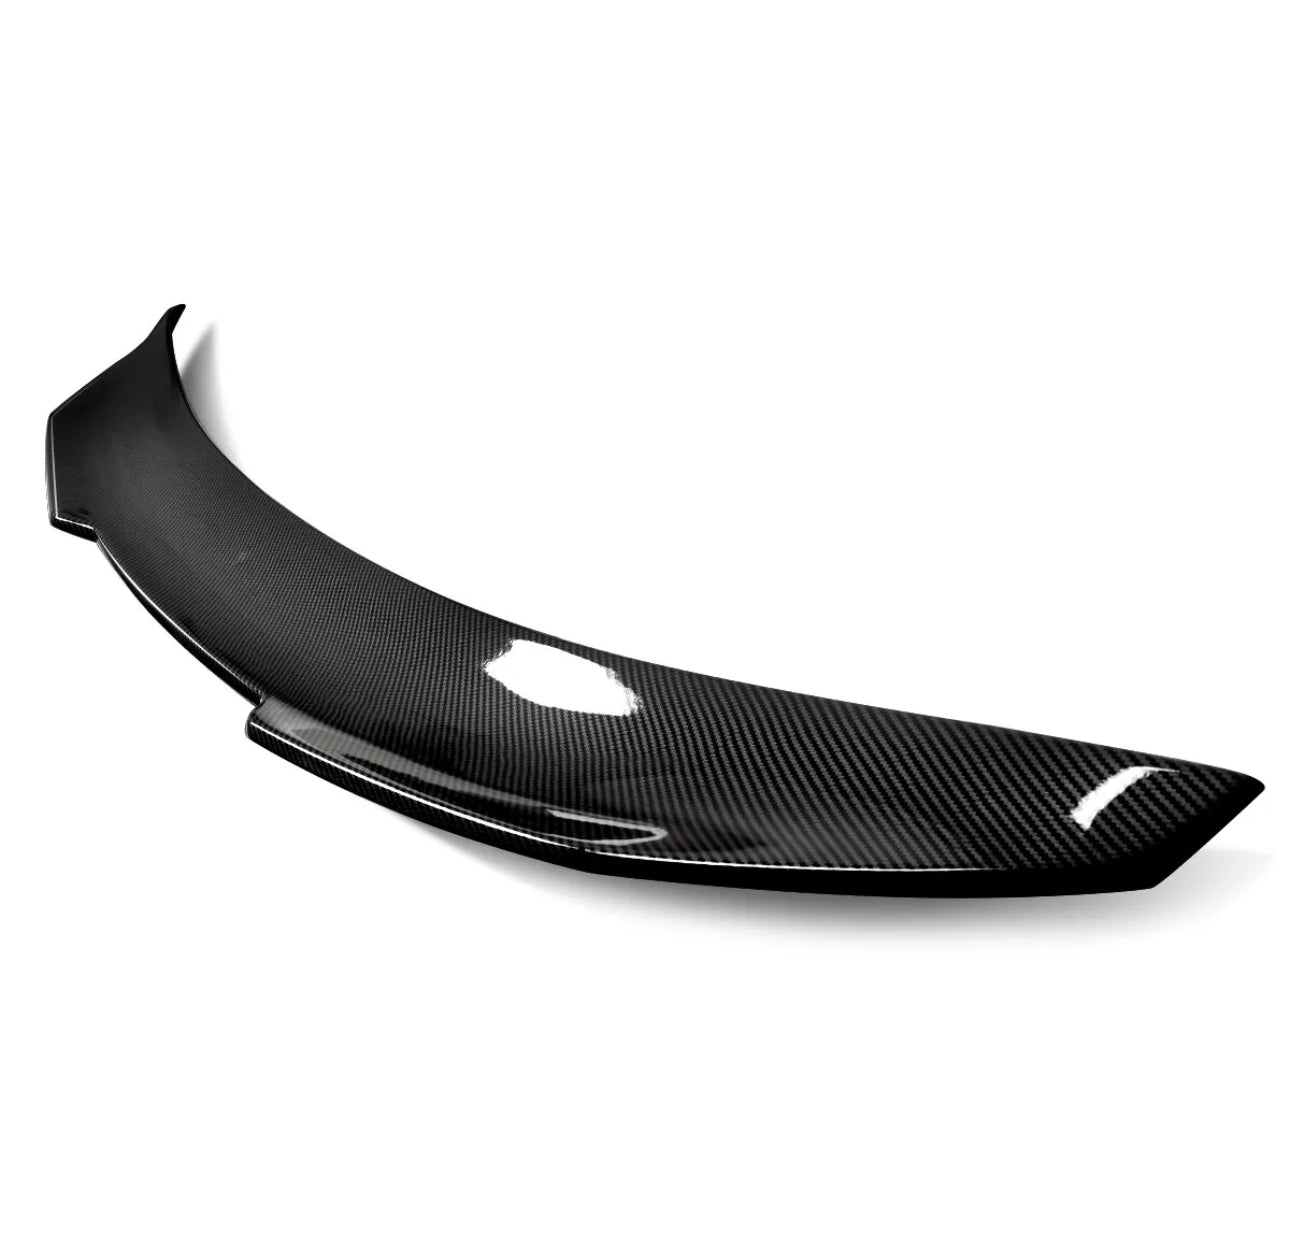 Duckbill Trunk Spoiler “M style” Wing Real Carbon Fiber For Infiniti G35 G25 G37 Sedan 07-14